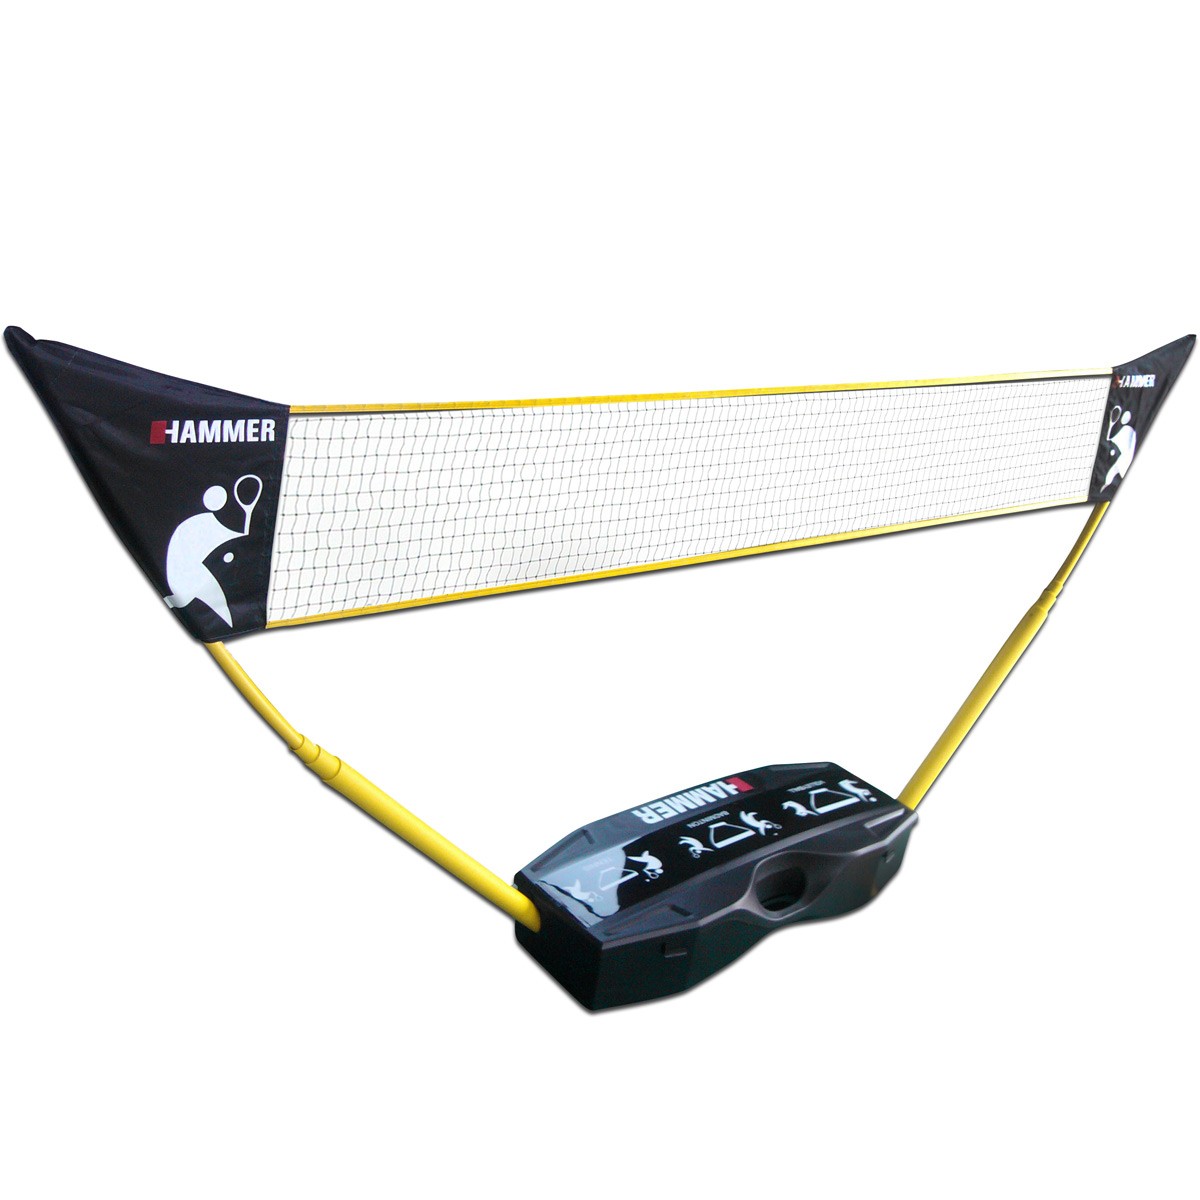 Hammer 3 in 1 Netze-Set für Volleyball Badminton & Tennis 